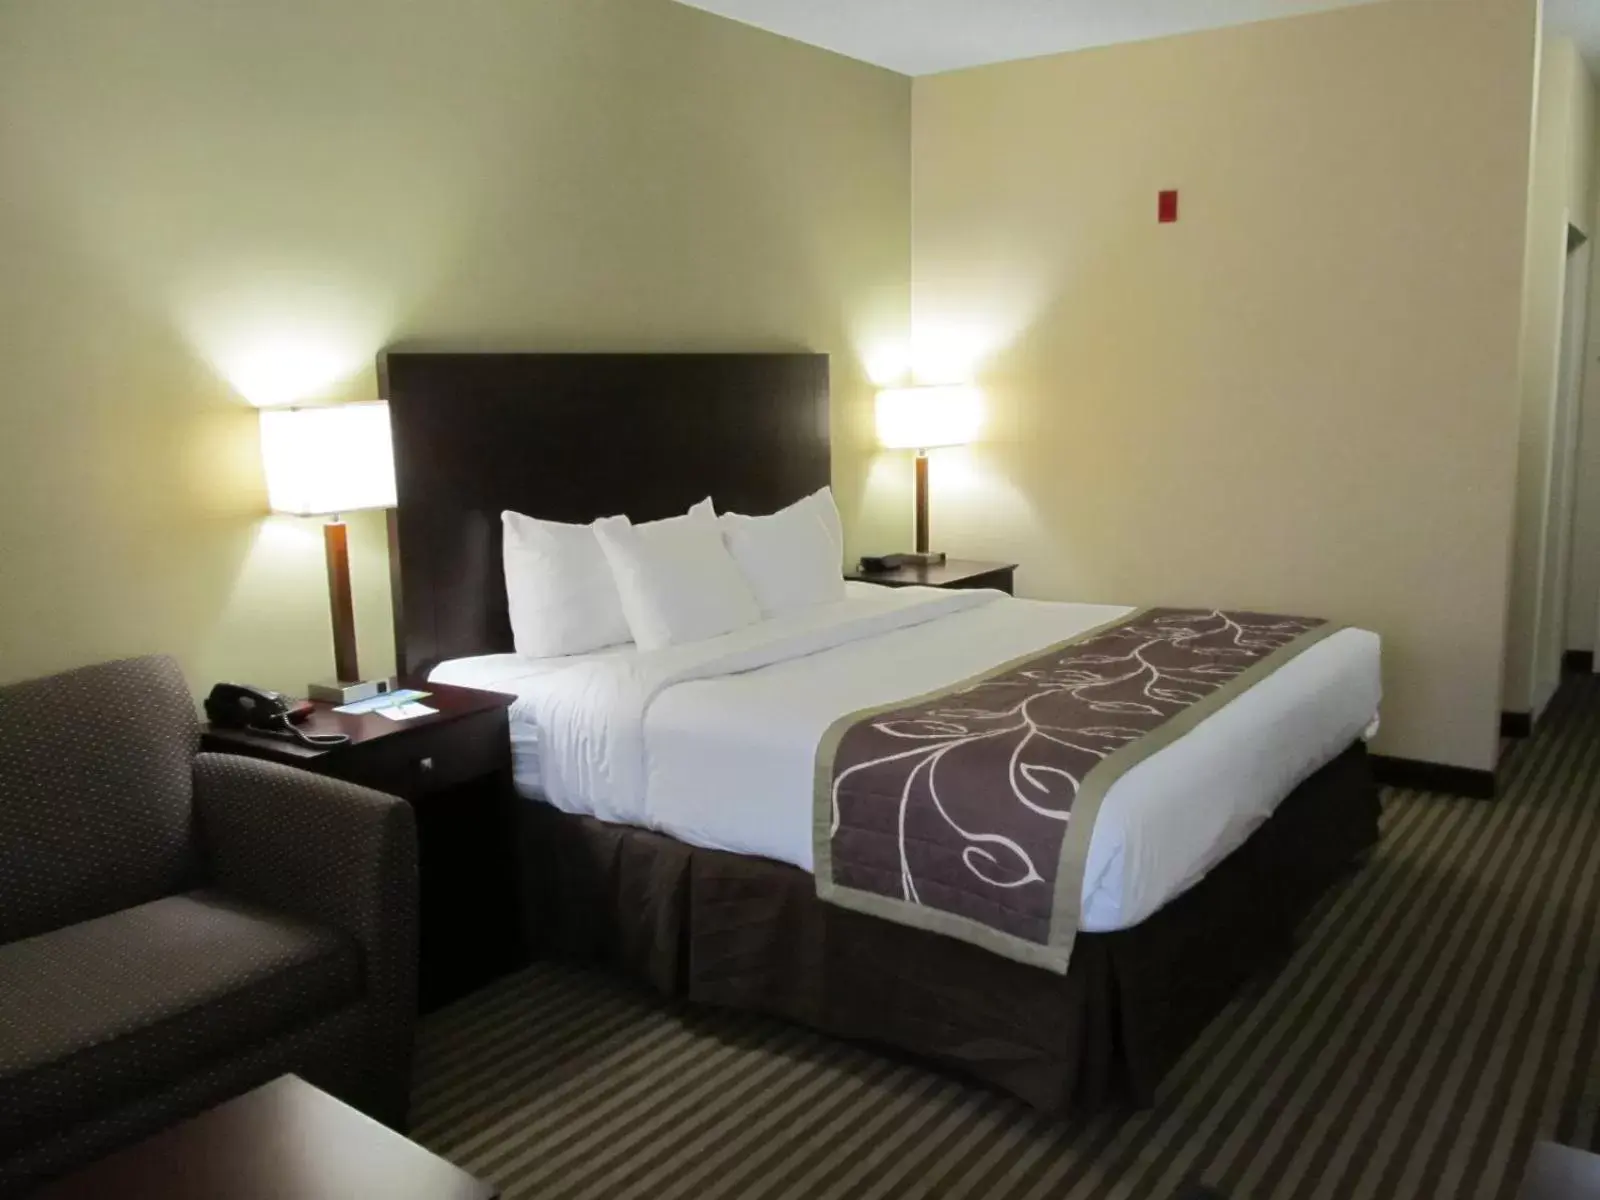 Bedroom, Bed in Days Inn by Wyndham Brewerton/ Syracuse near Oneida Lake